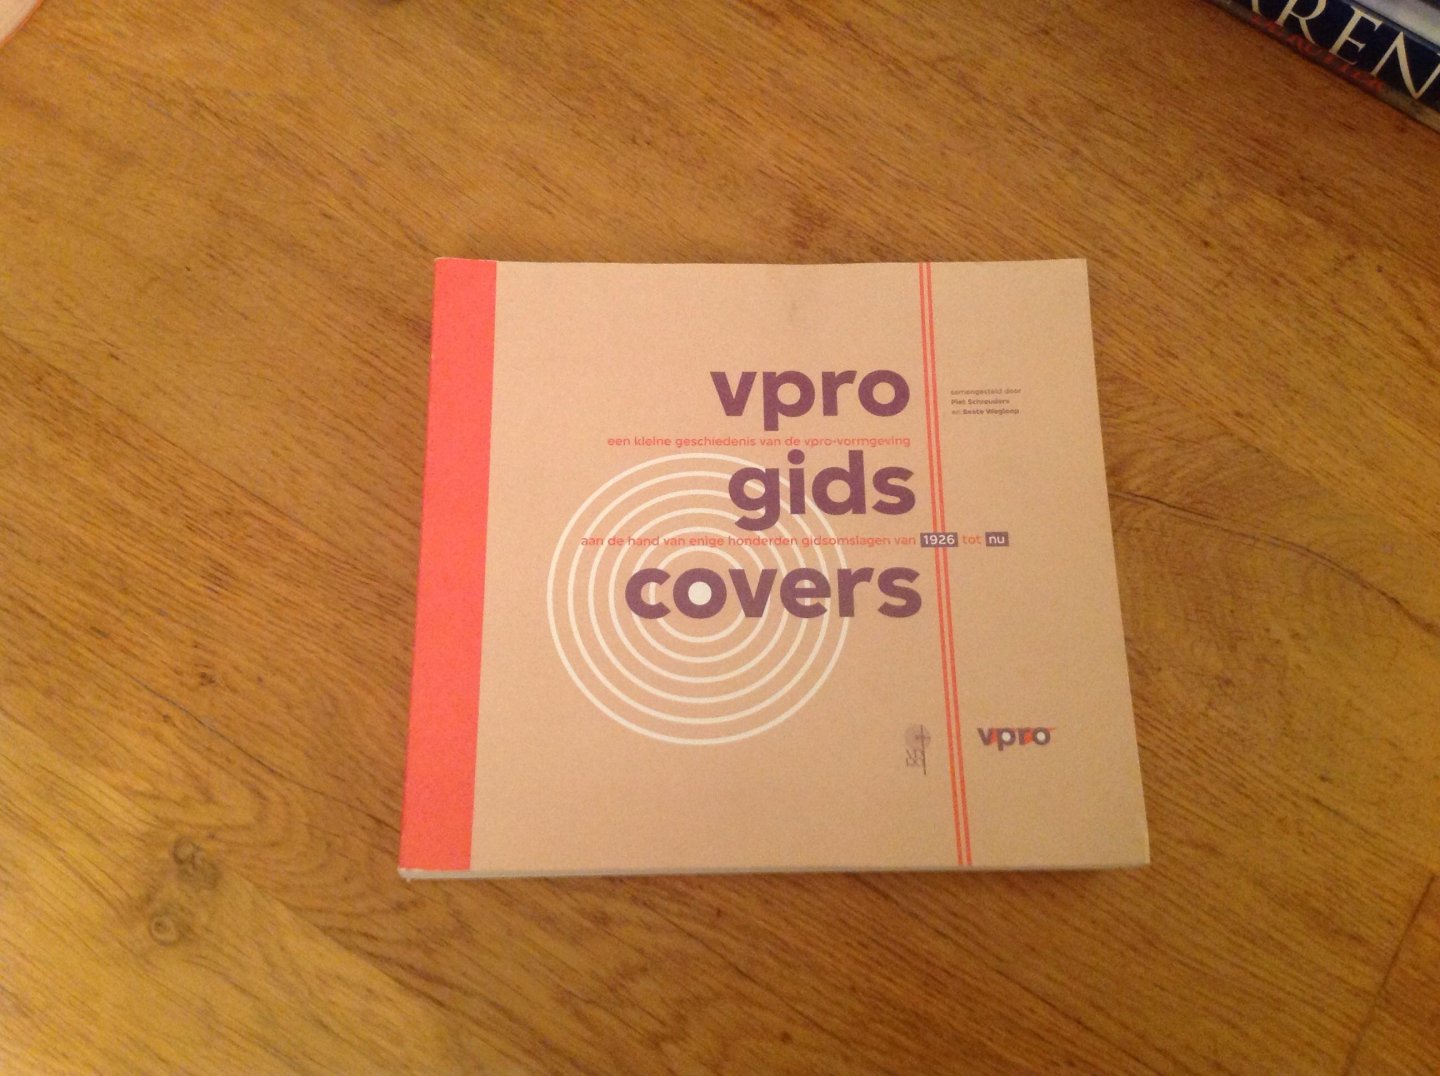 Looijestijn, Elja, Bracht, Maarten van - VPRO boek VPRO Gids covers / een kleine geschiedenis van de VPRO-vormgeving aan de hand van honderden gidsomslagen van 1926 tot nu